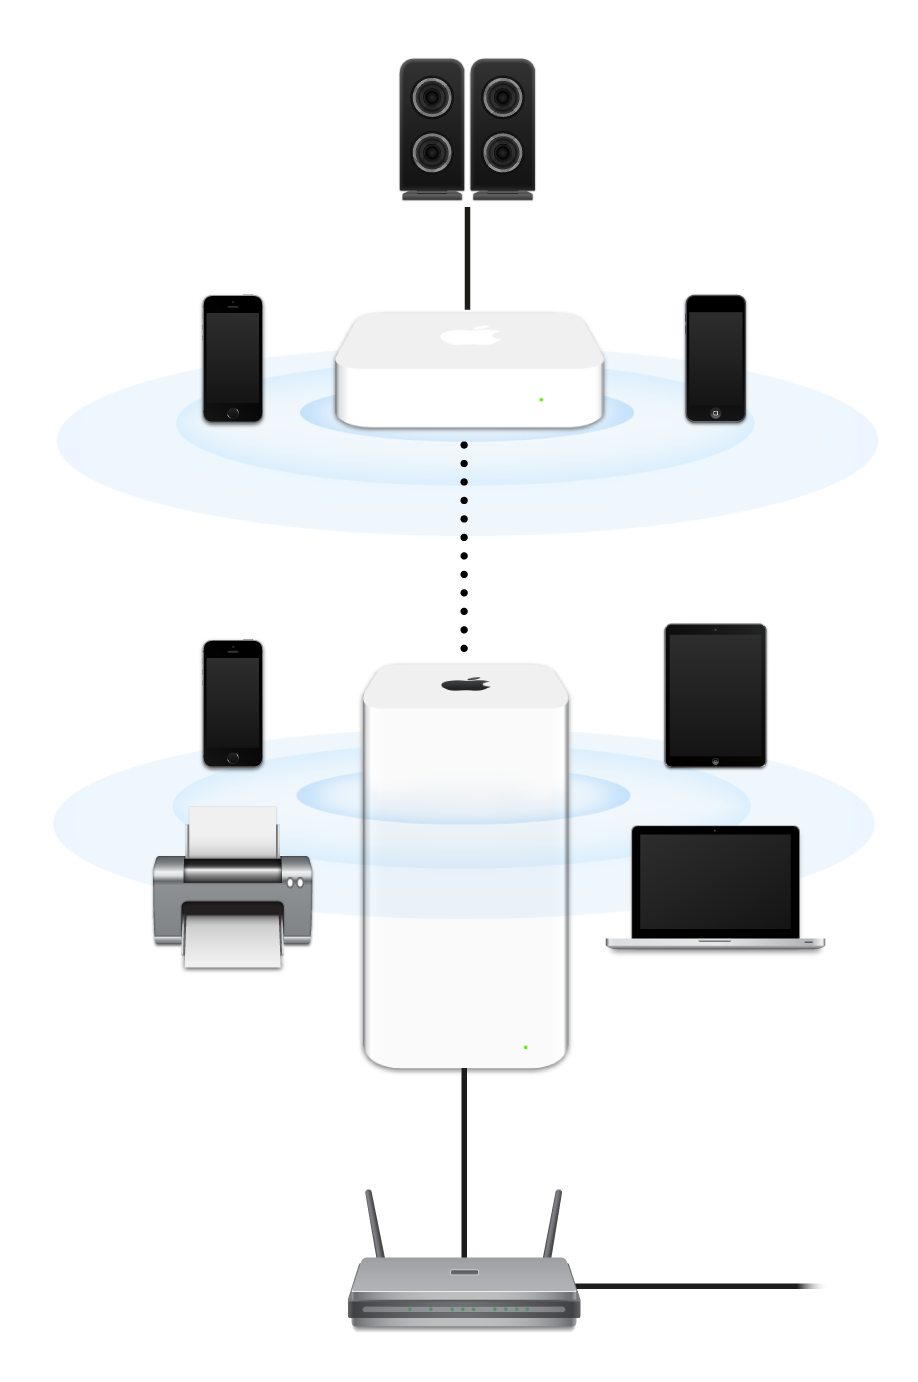 AirPort Extreme और AirPort Express सहित कोई विस्तारित नेटवर्क मॉडम से कनेक्ट है और अनेक प्रकार के डिवाइस का प्रसारण कर रहा है।